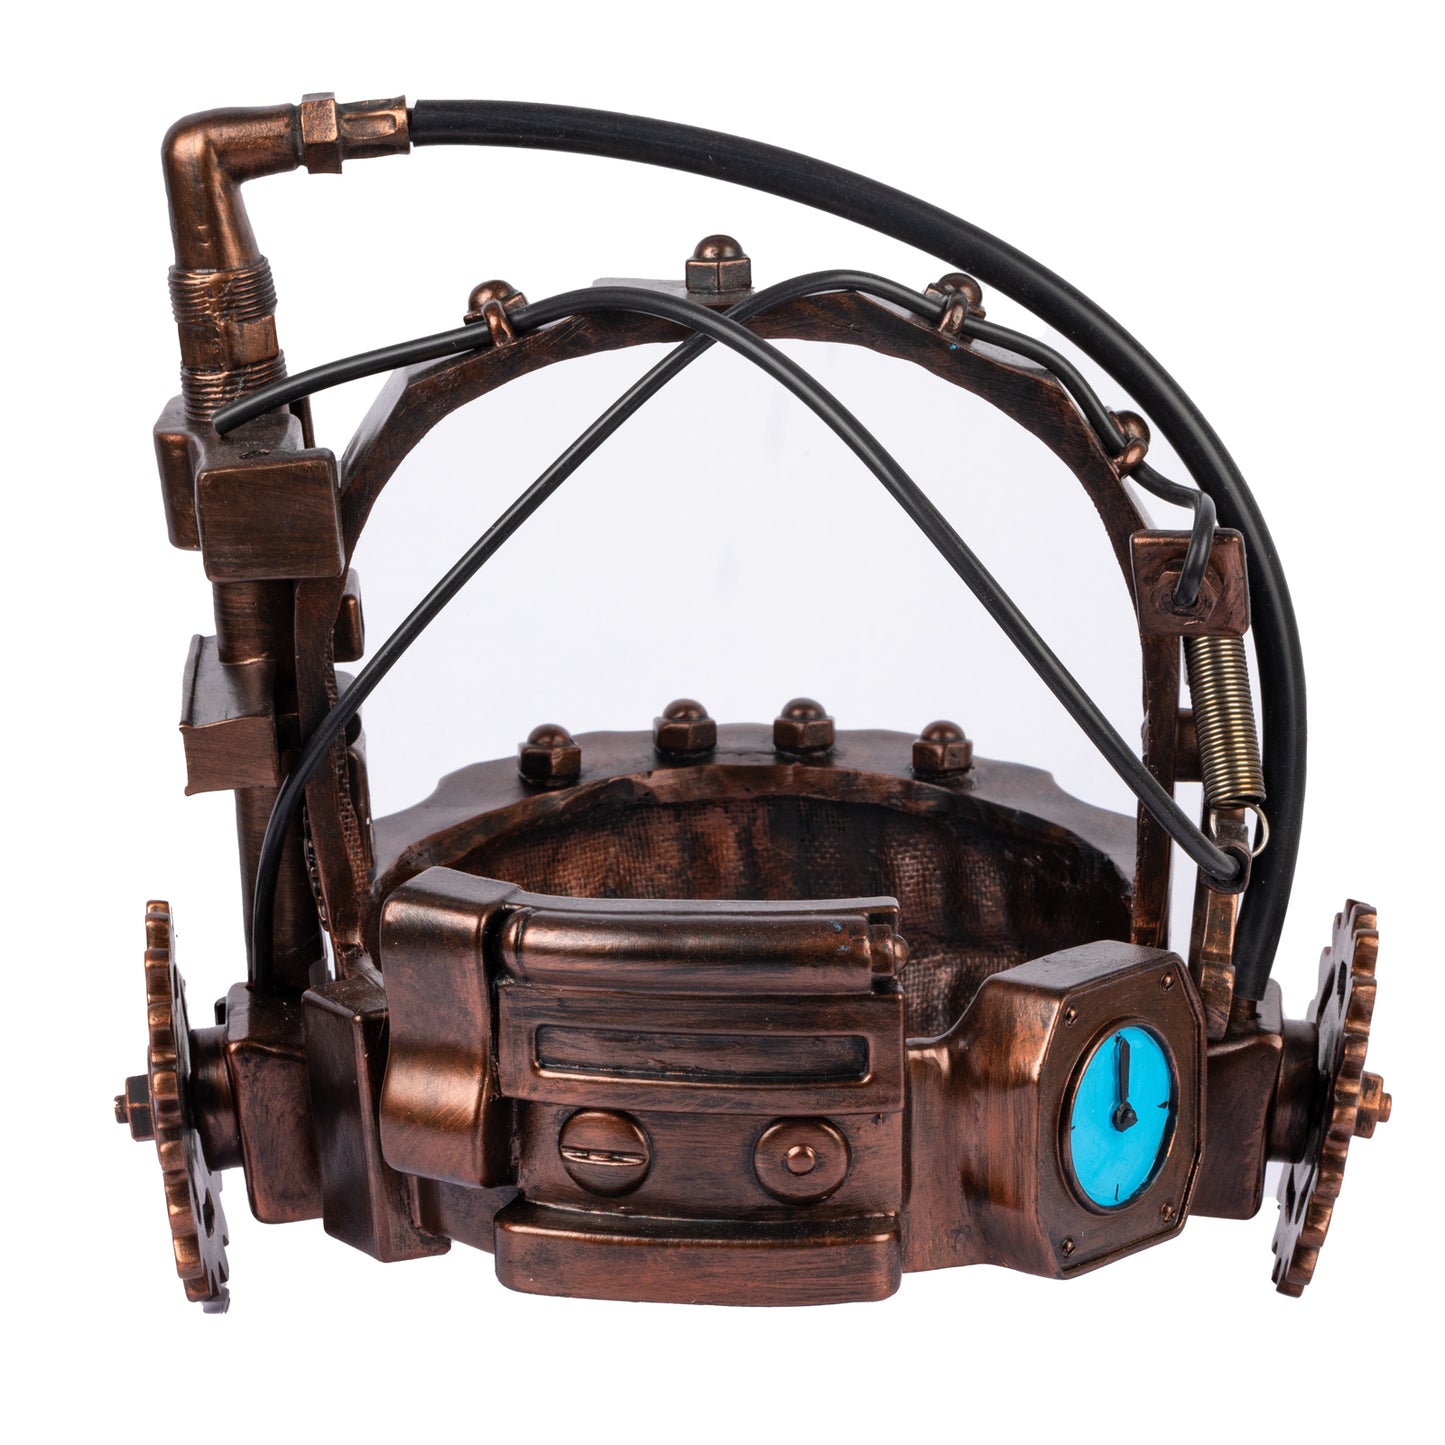 【Neu eingetroffen】Xcoser 1:1 SAW Reverse Bear Trap Cosplay Helm Maske Requisiten Harz Erwachsene Halloween